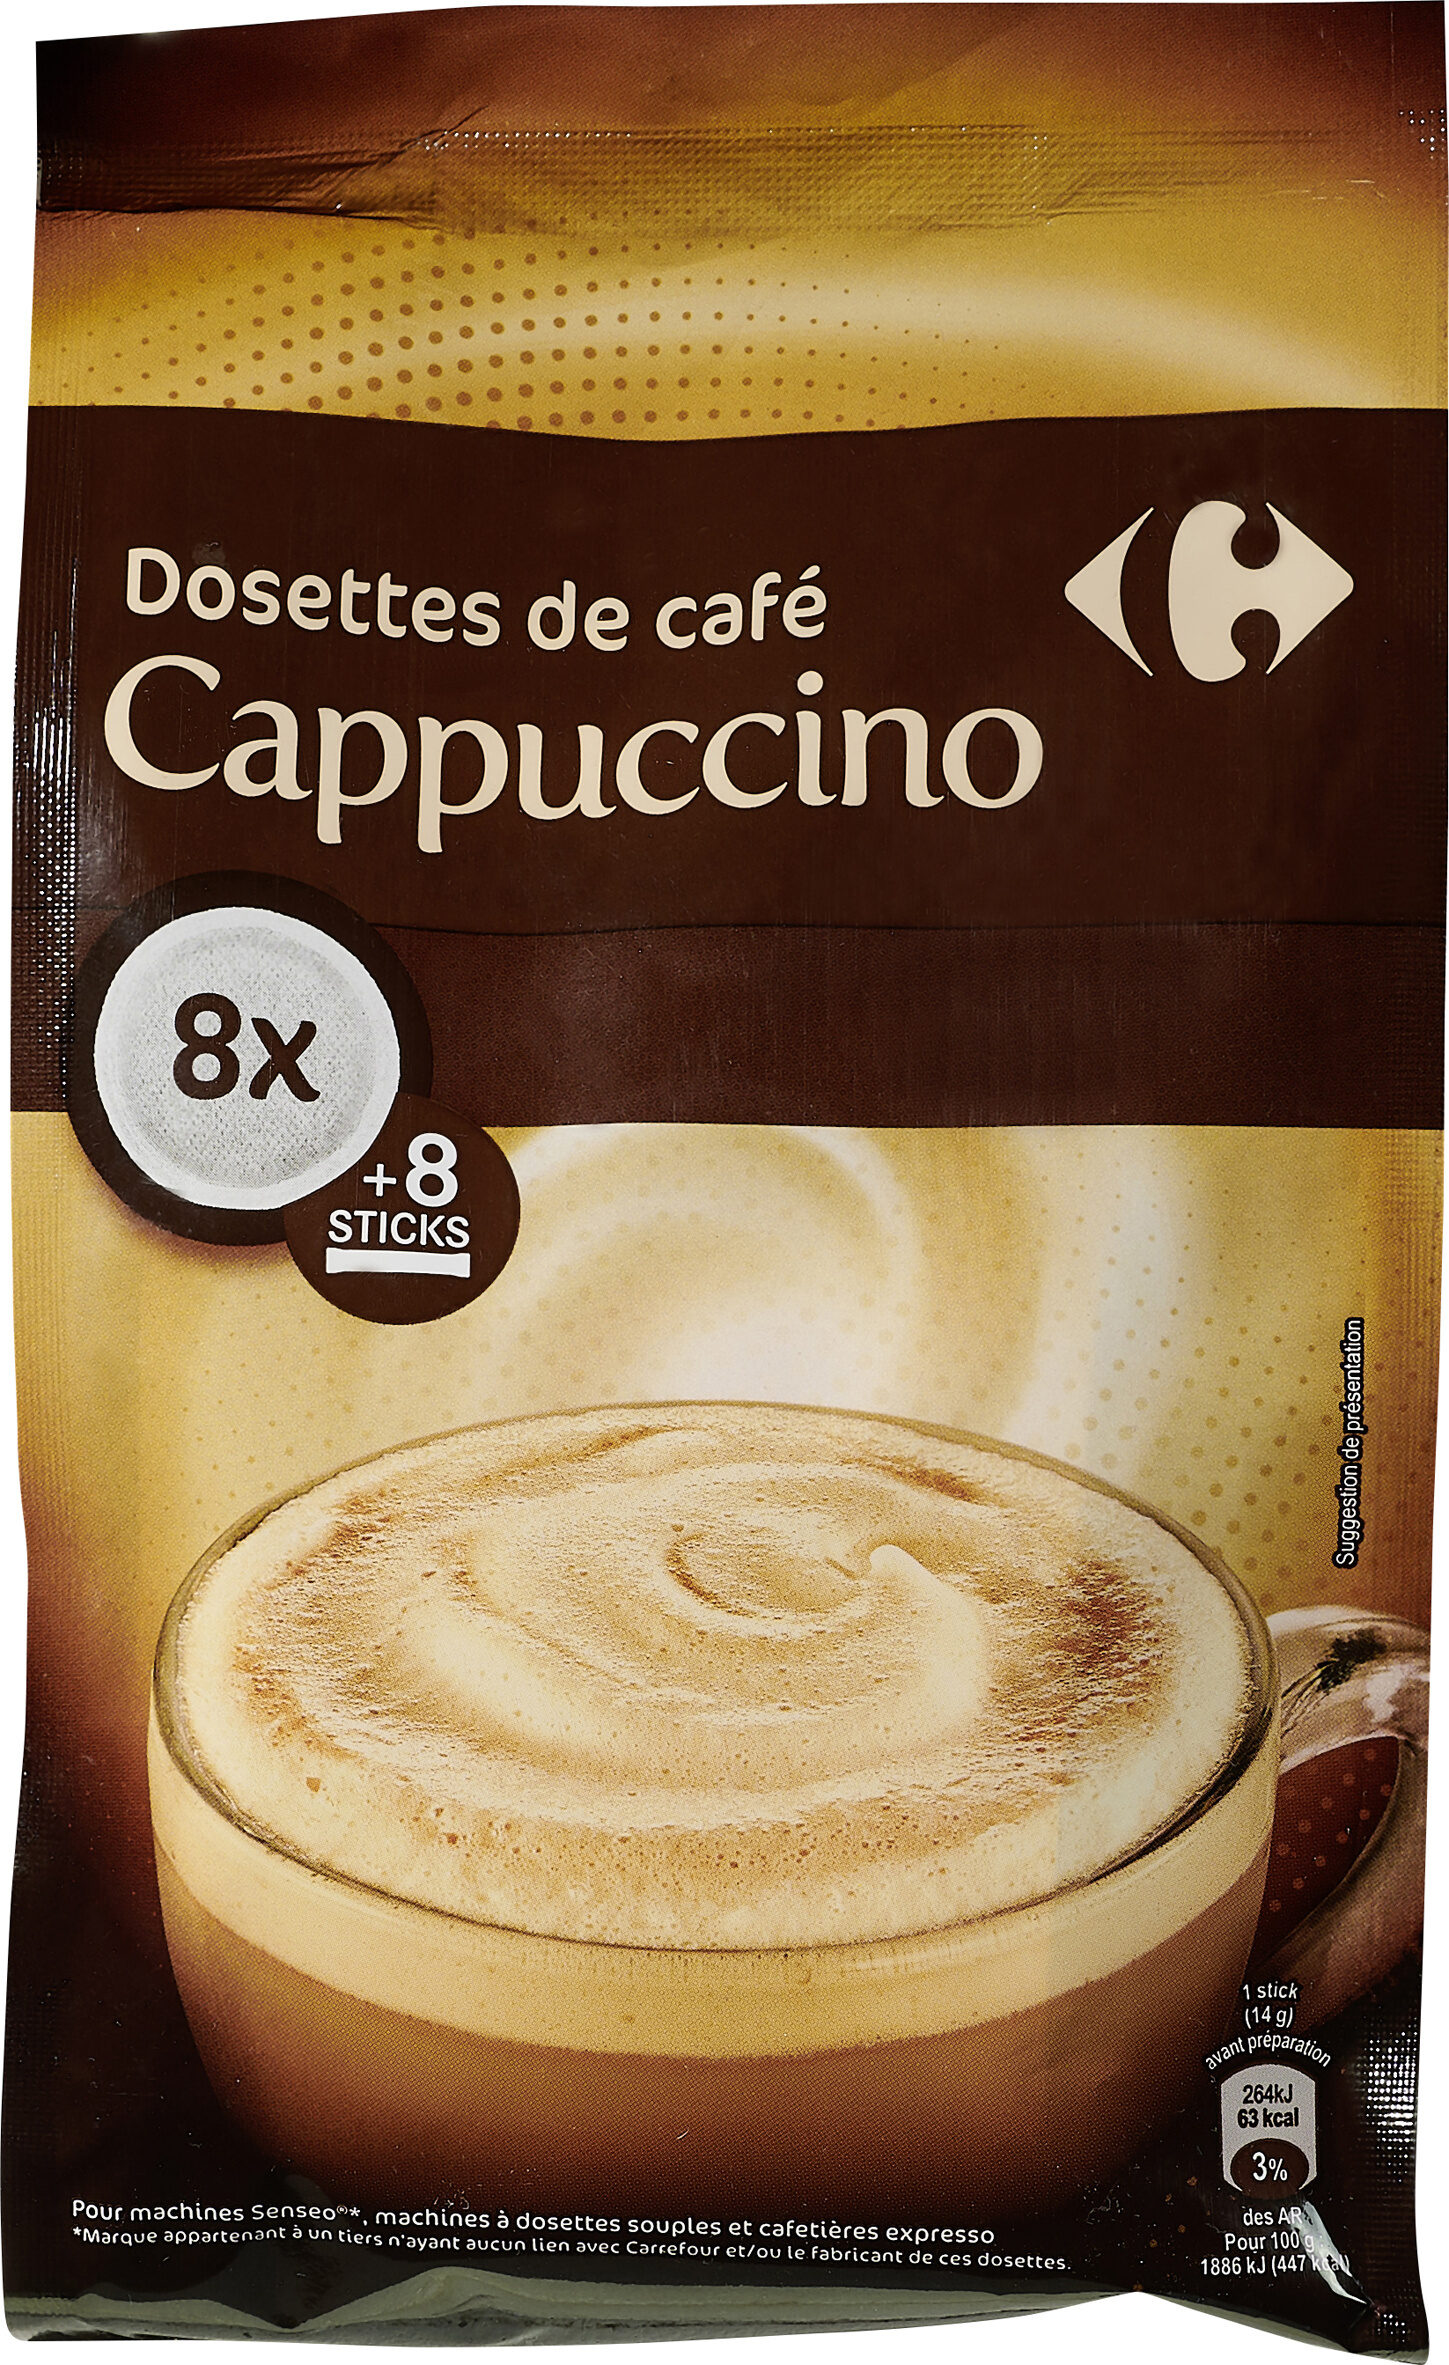 Dosettes de café Cappuccino - Prodotto - fr